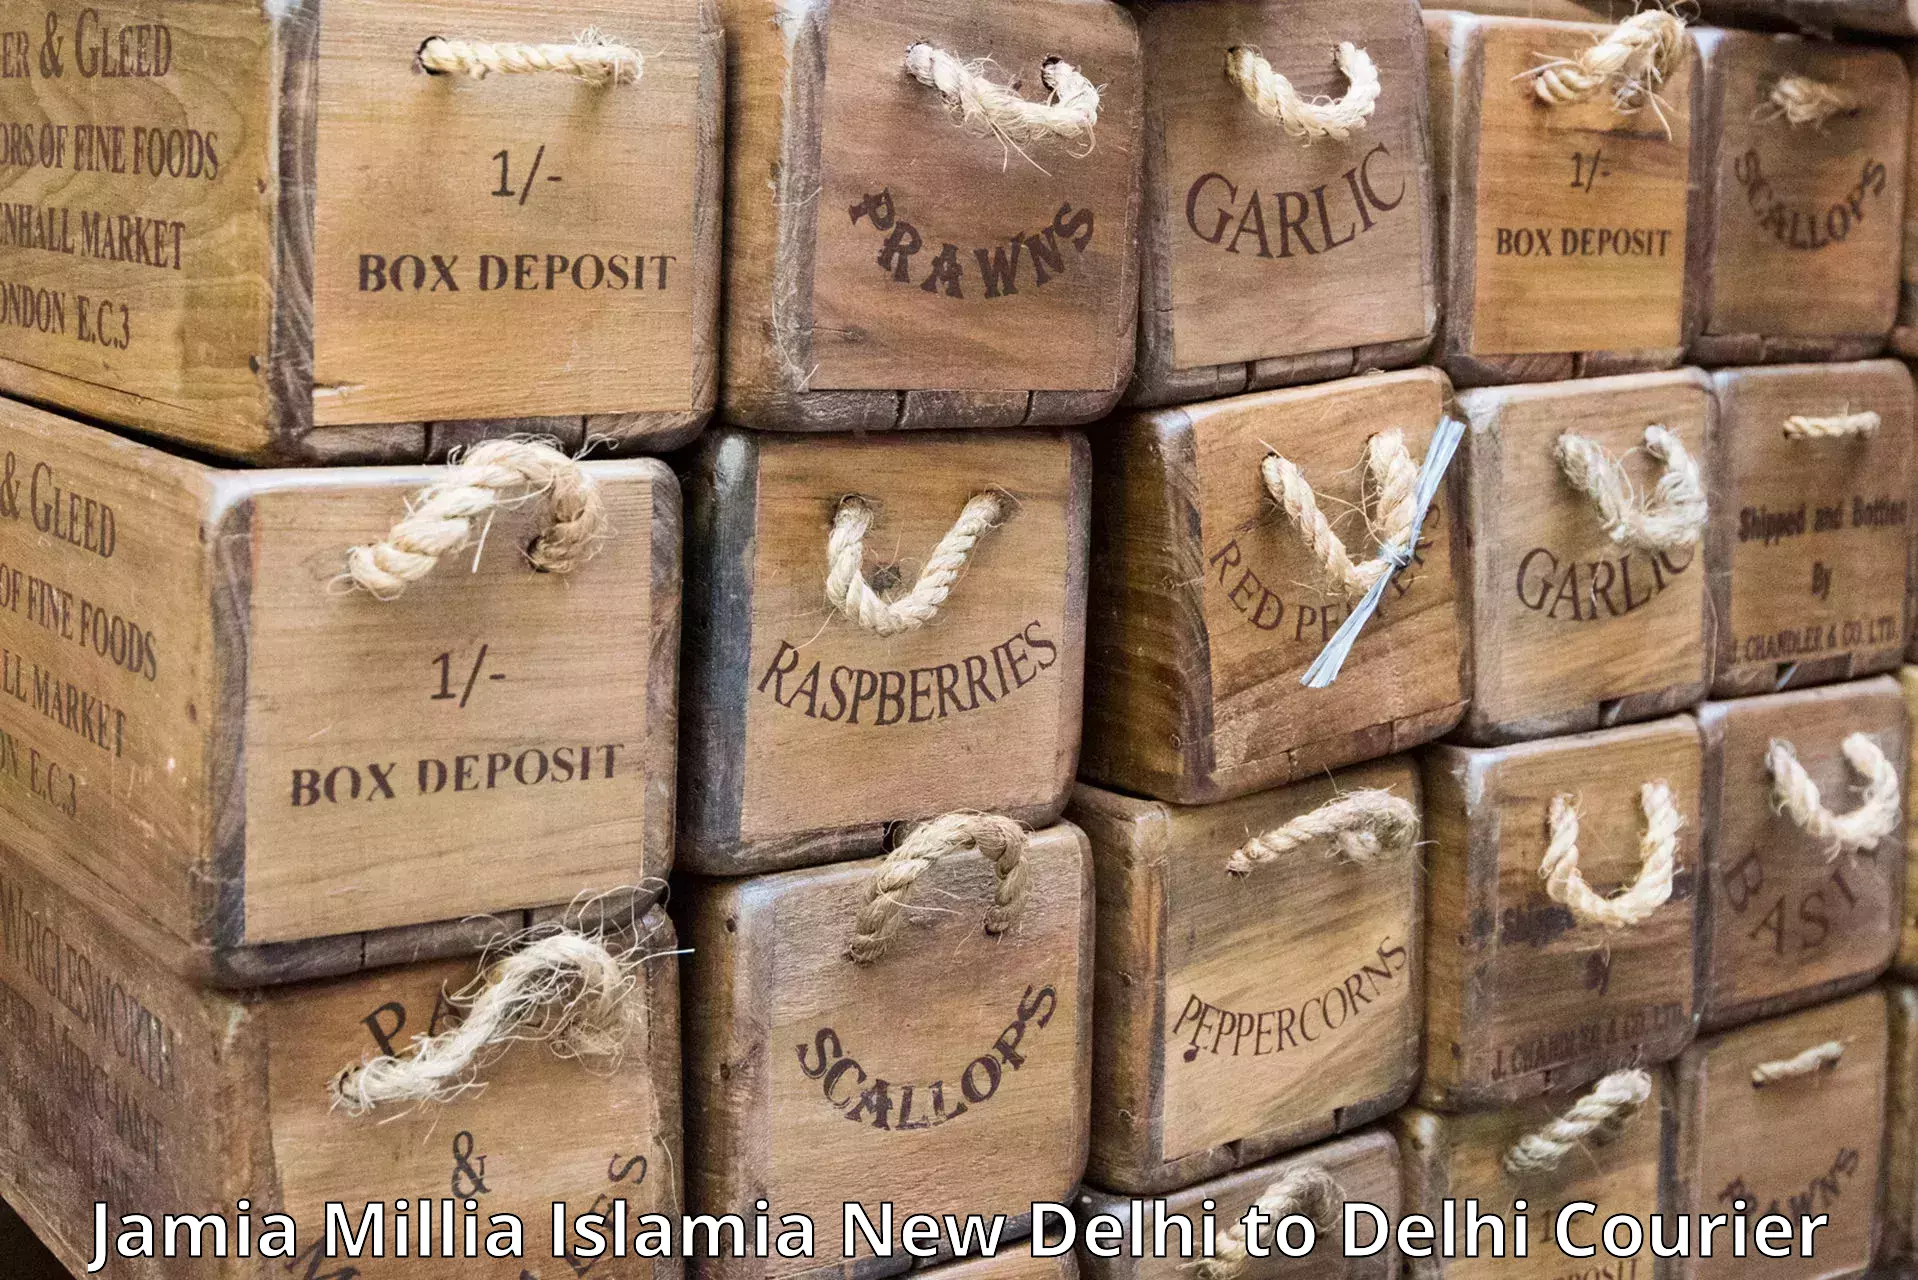 User-friendly delivery service Jamia Millia Islamia New Delhi to IIT Delhi